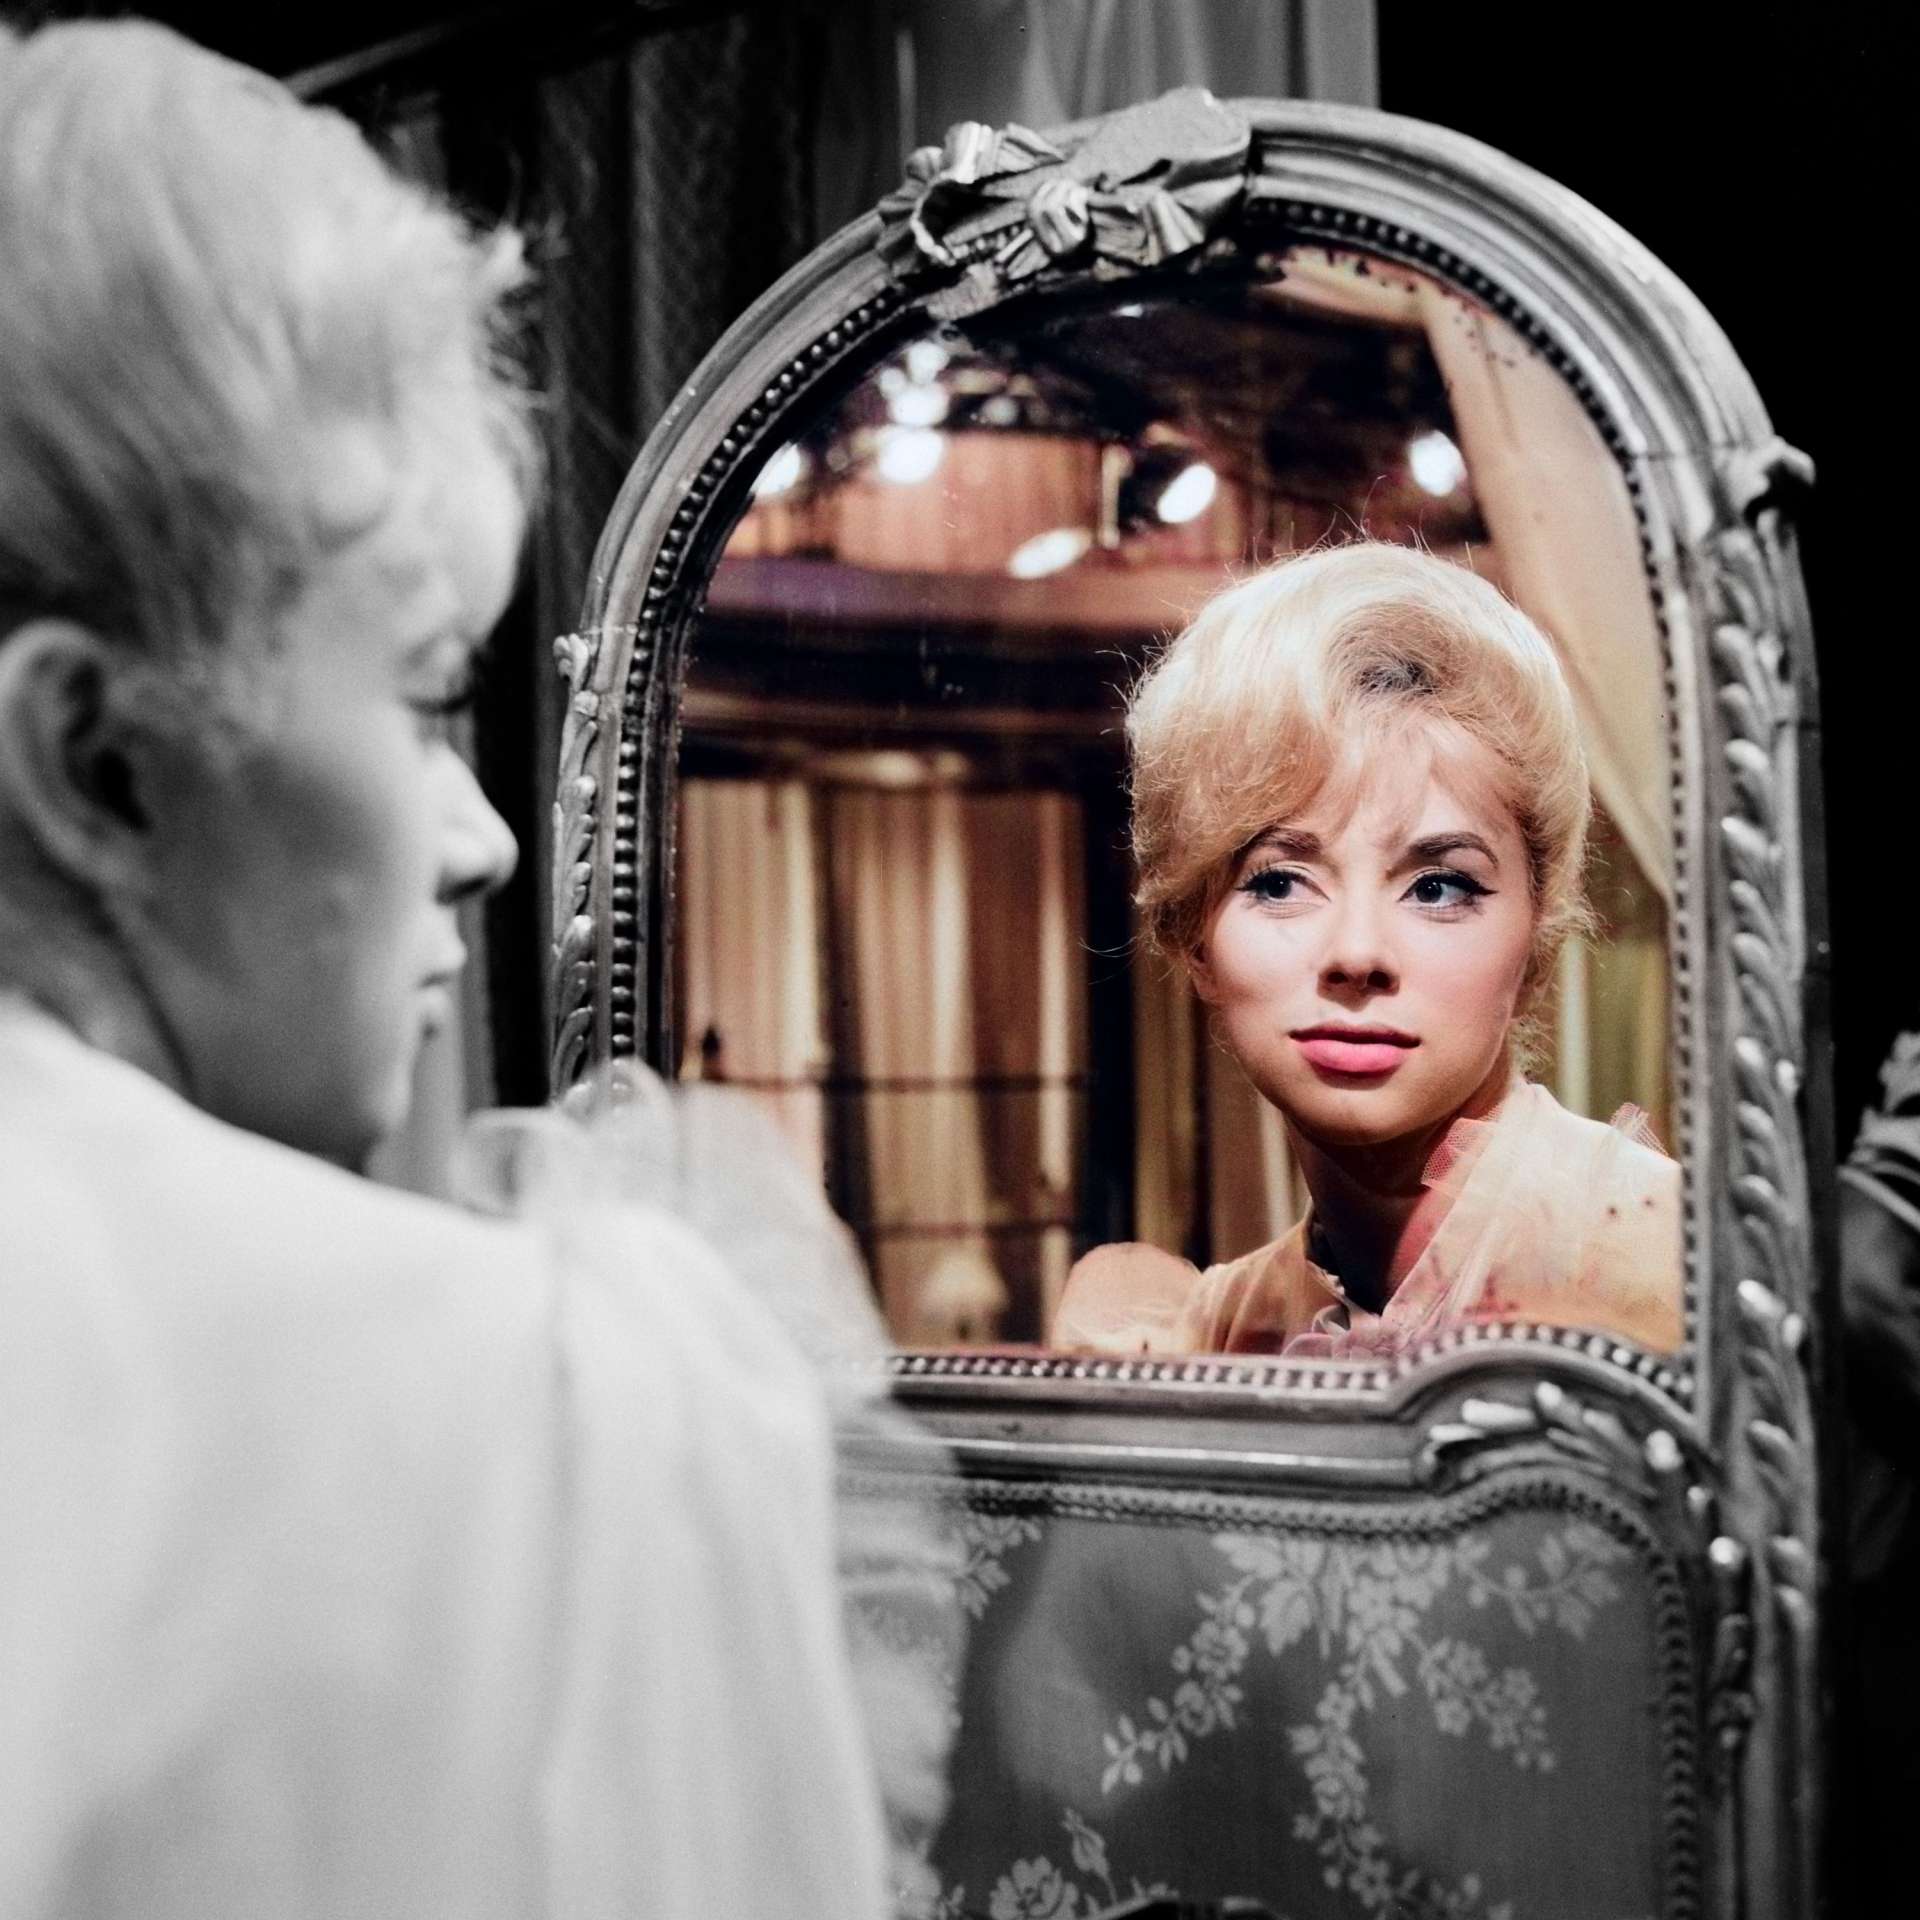 Mireille Darc dans la pièce "La danse devant le miroir", 1963
